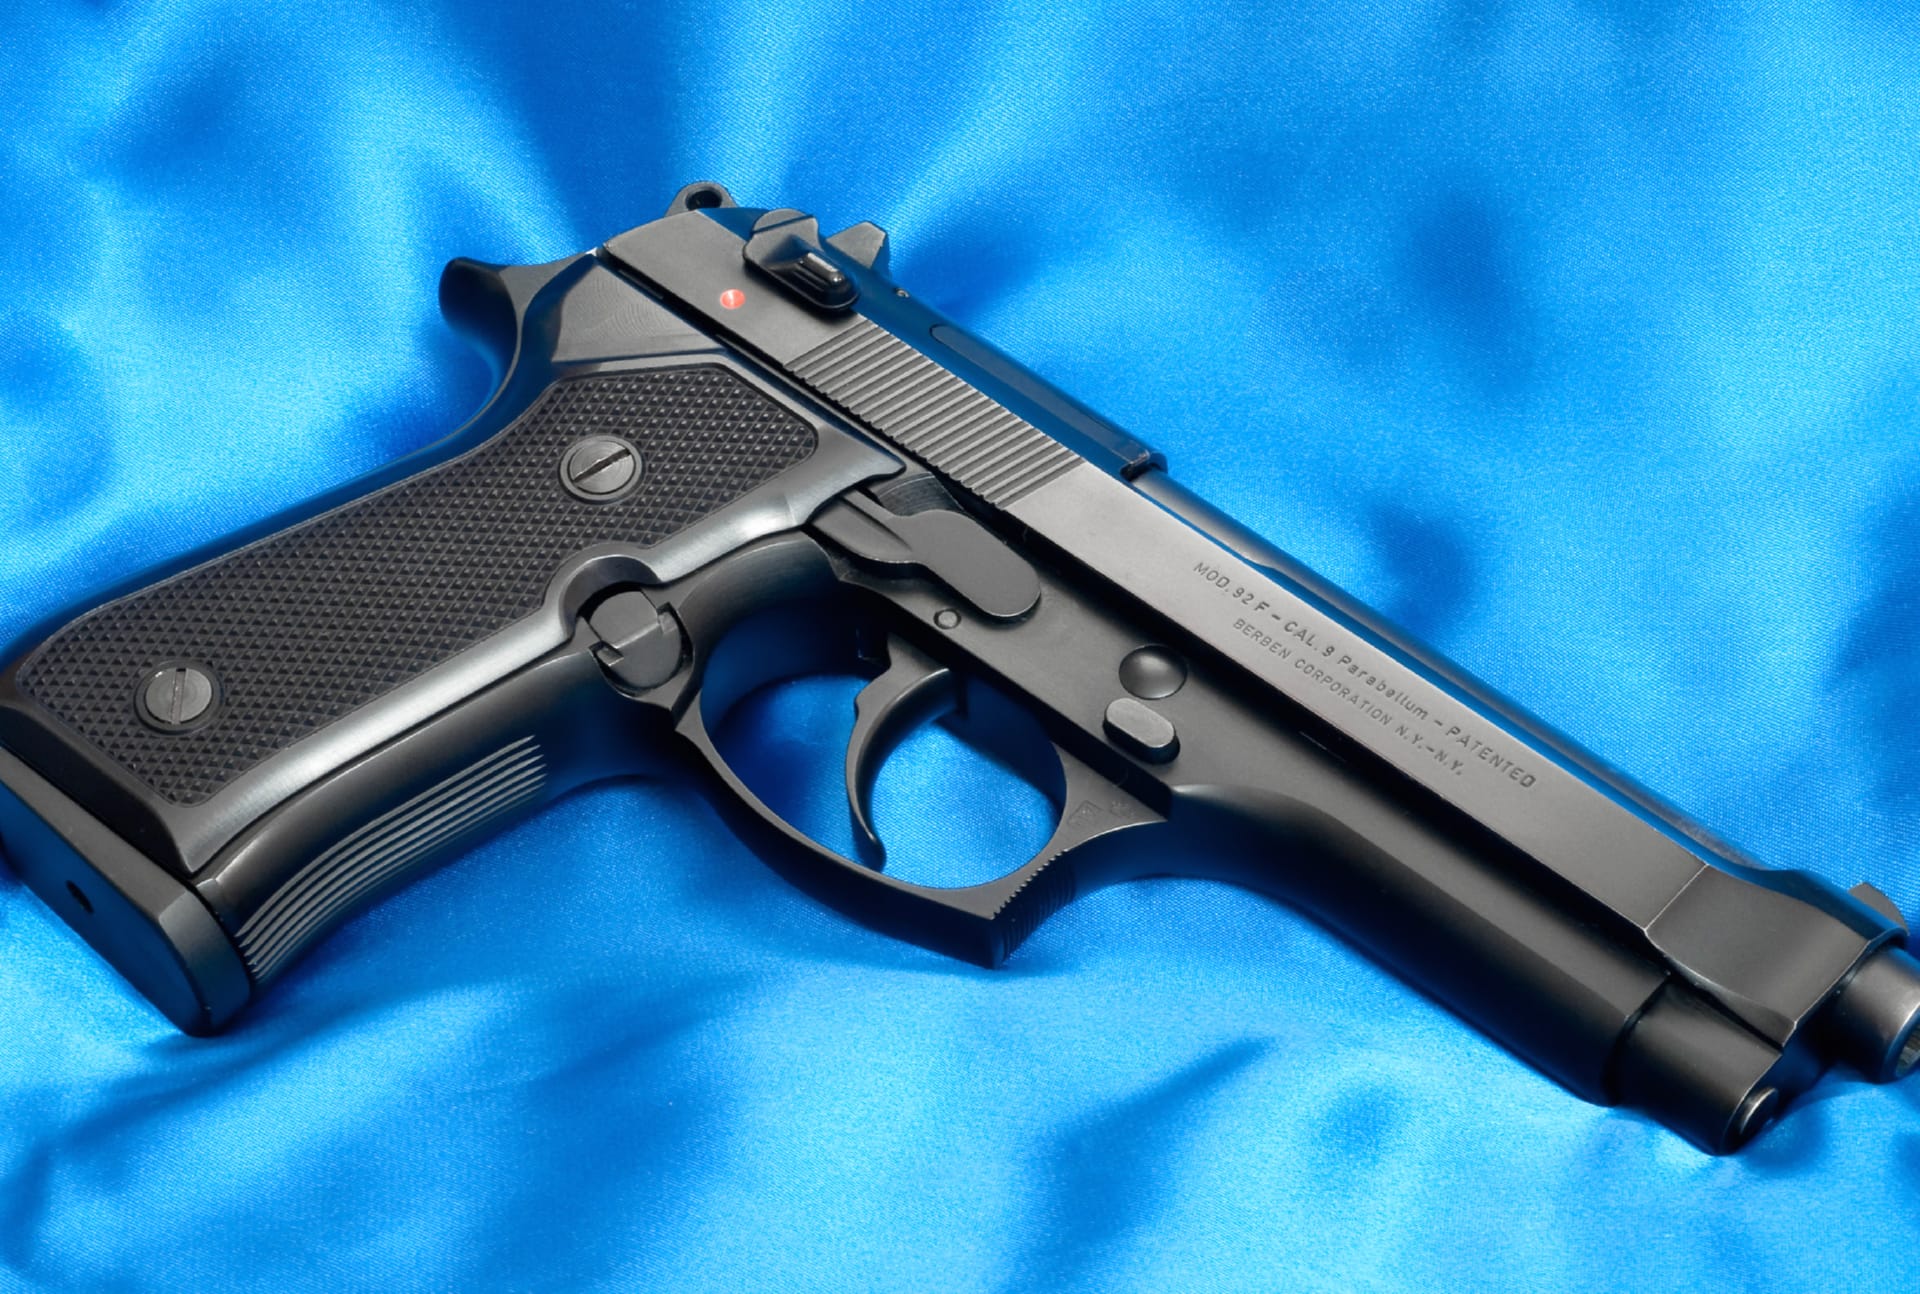 Beretta 92F Pistol at 1152 x 864 size wallpapers HD quality